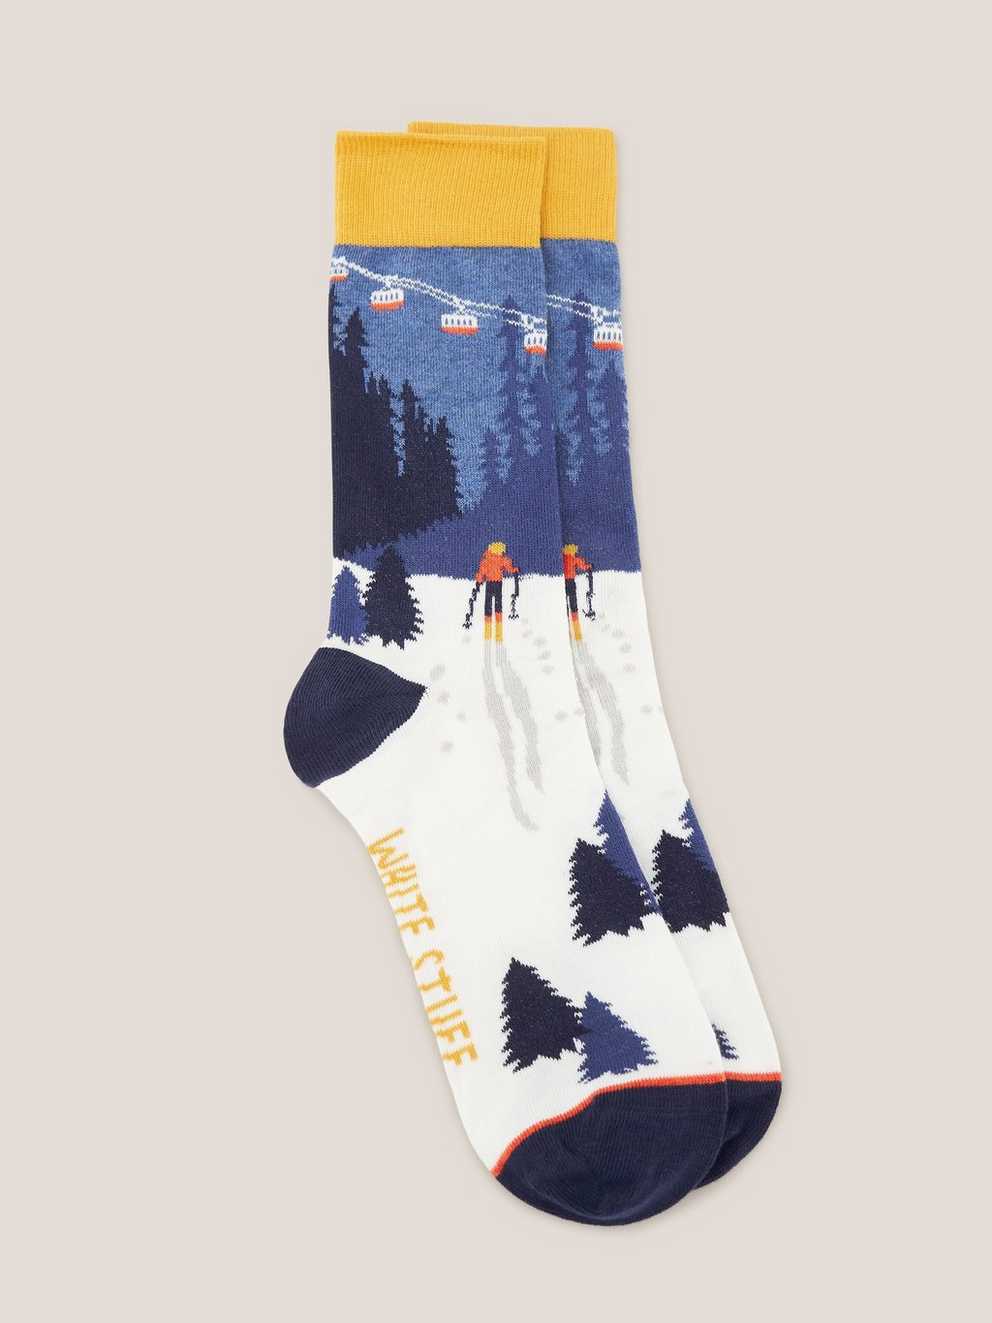 Ski Scenic Socks in a Cracker